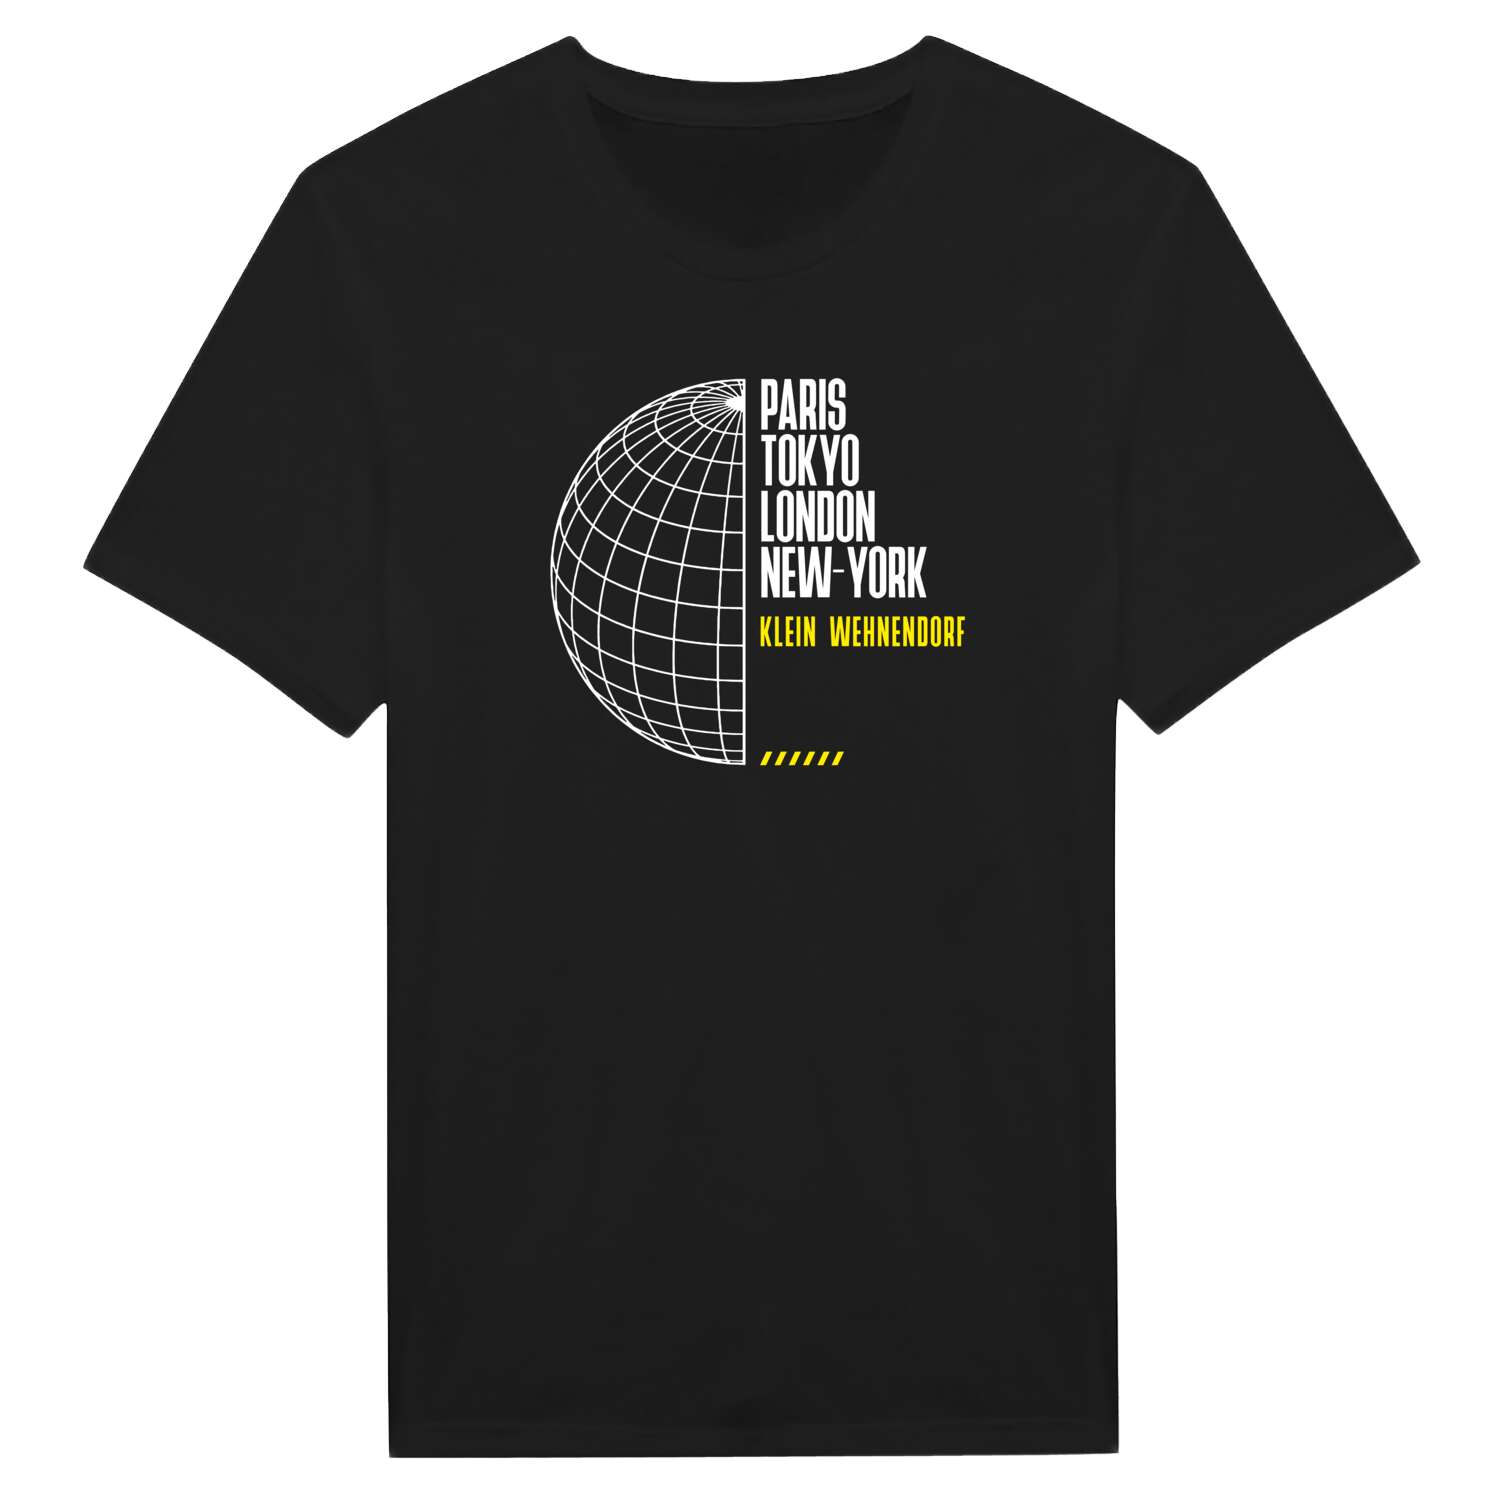 Klein Wehnendorf T-Shirt »Paris Tokyo London«